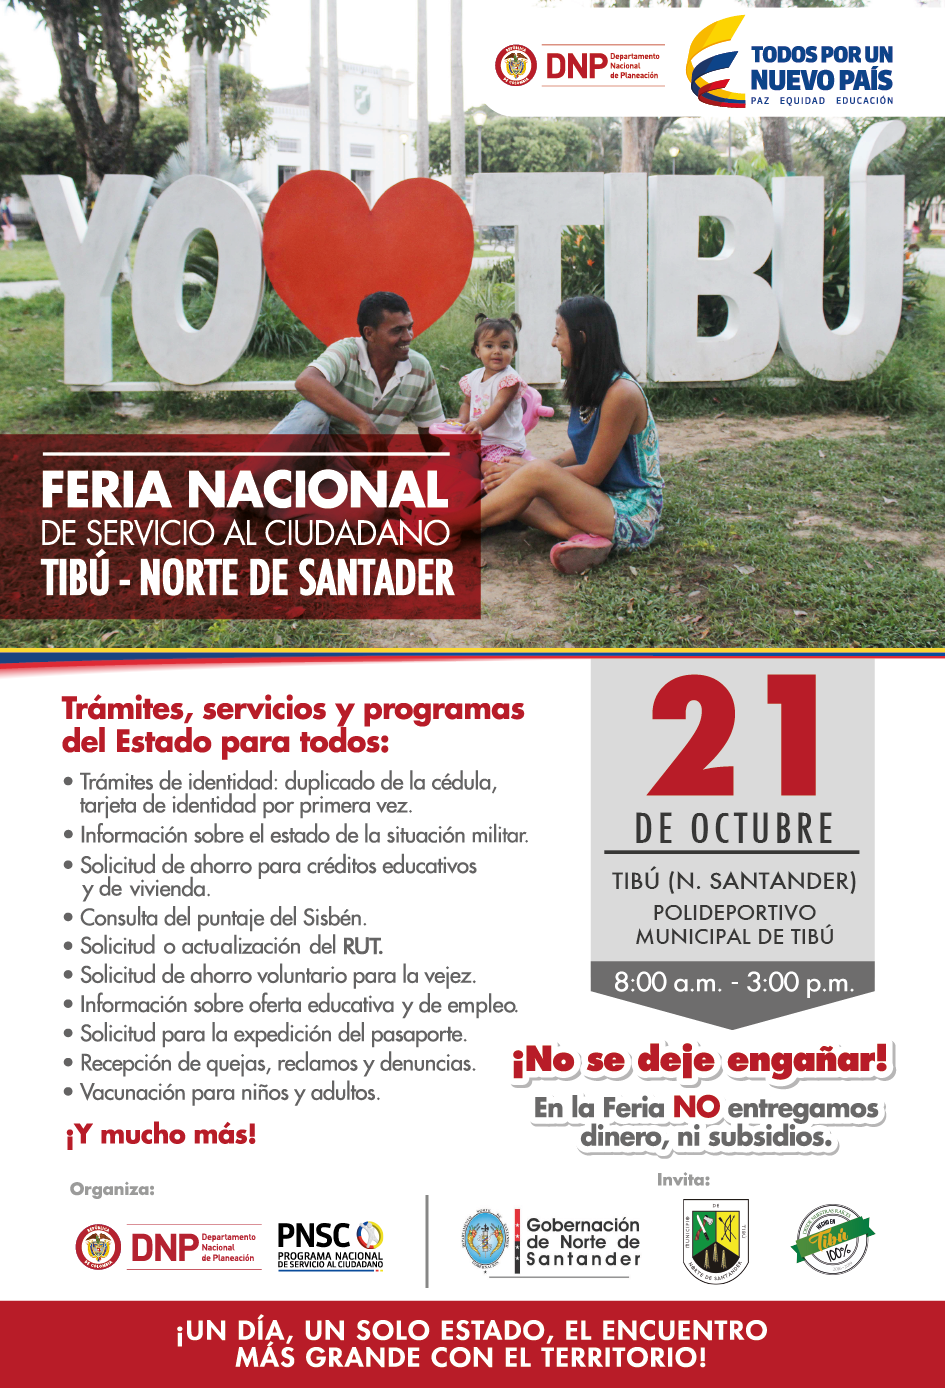 Afiche promocional de la Feria de Servicio al Ciudadano en Tibú